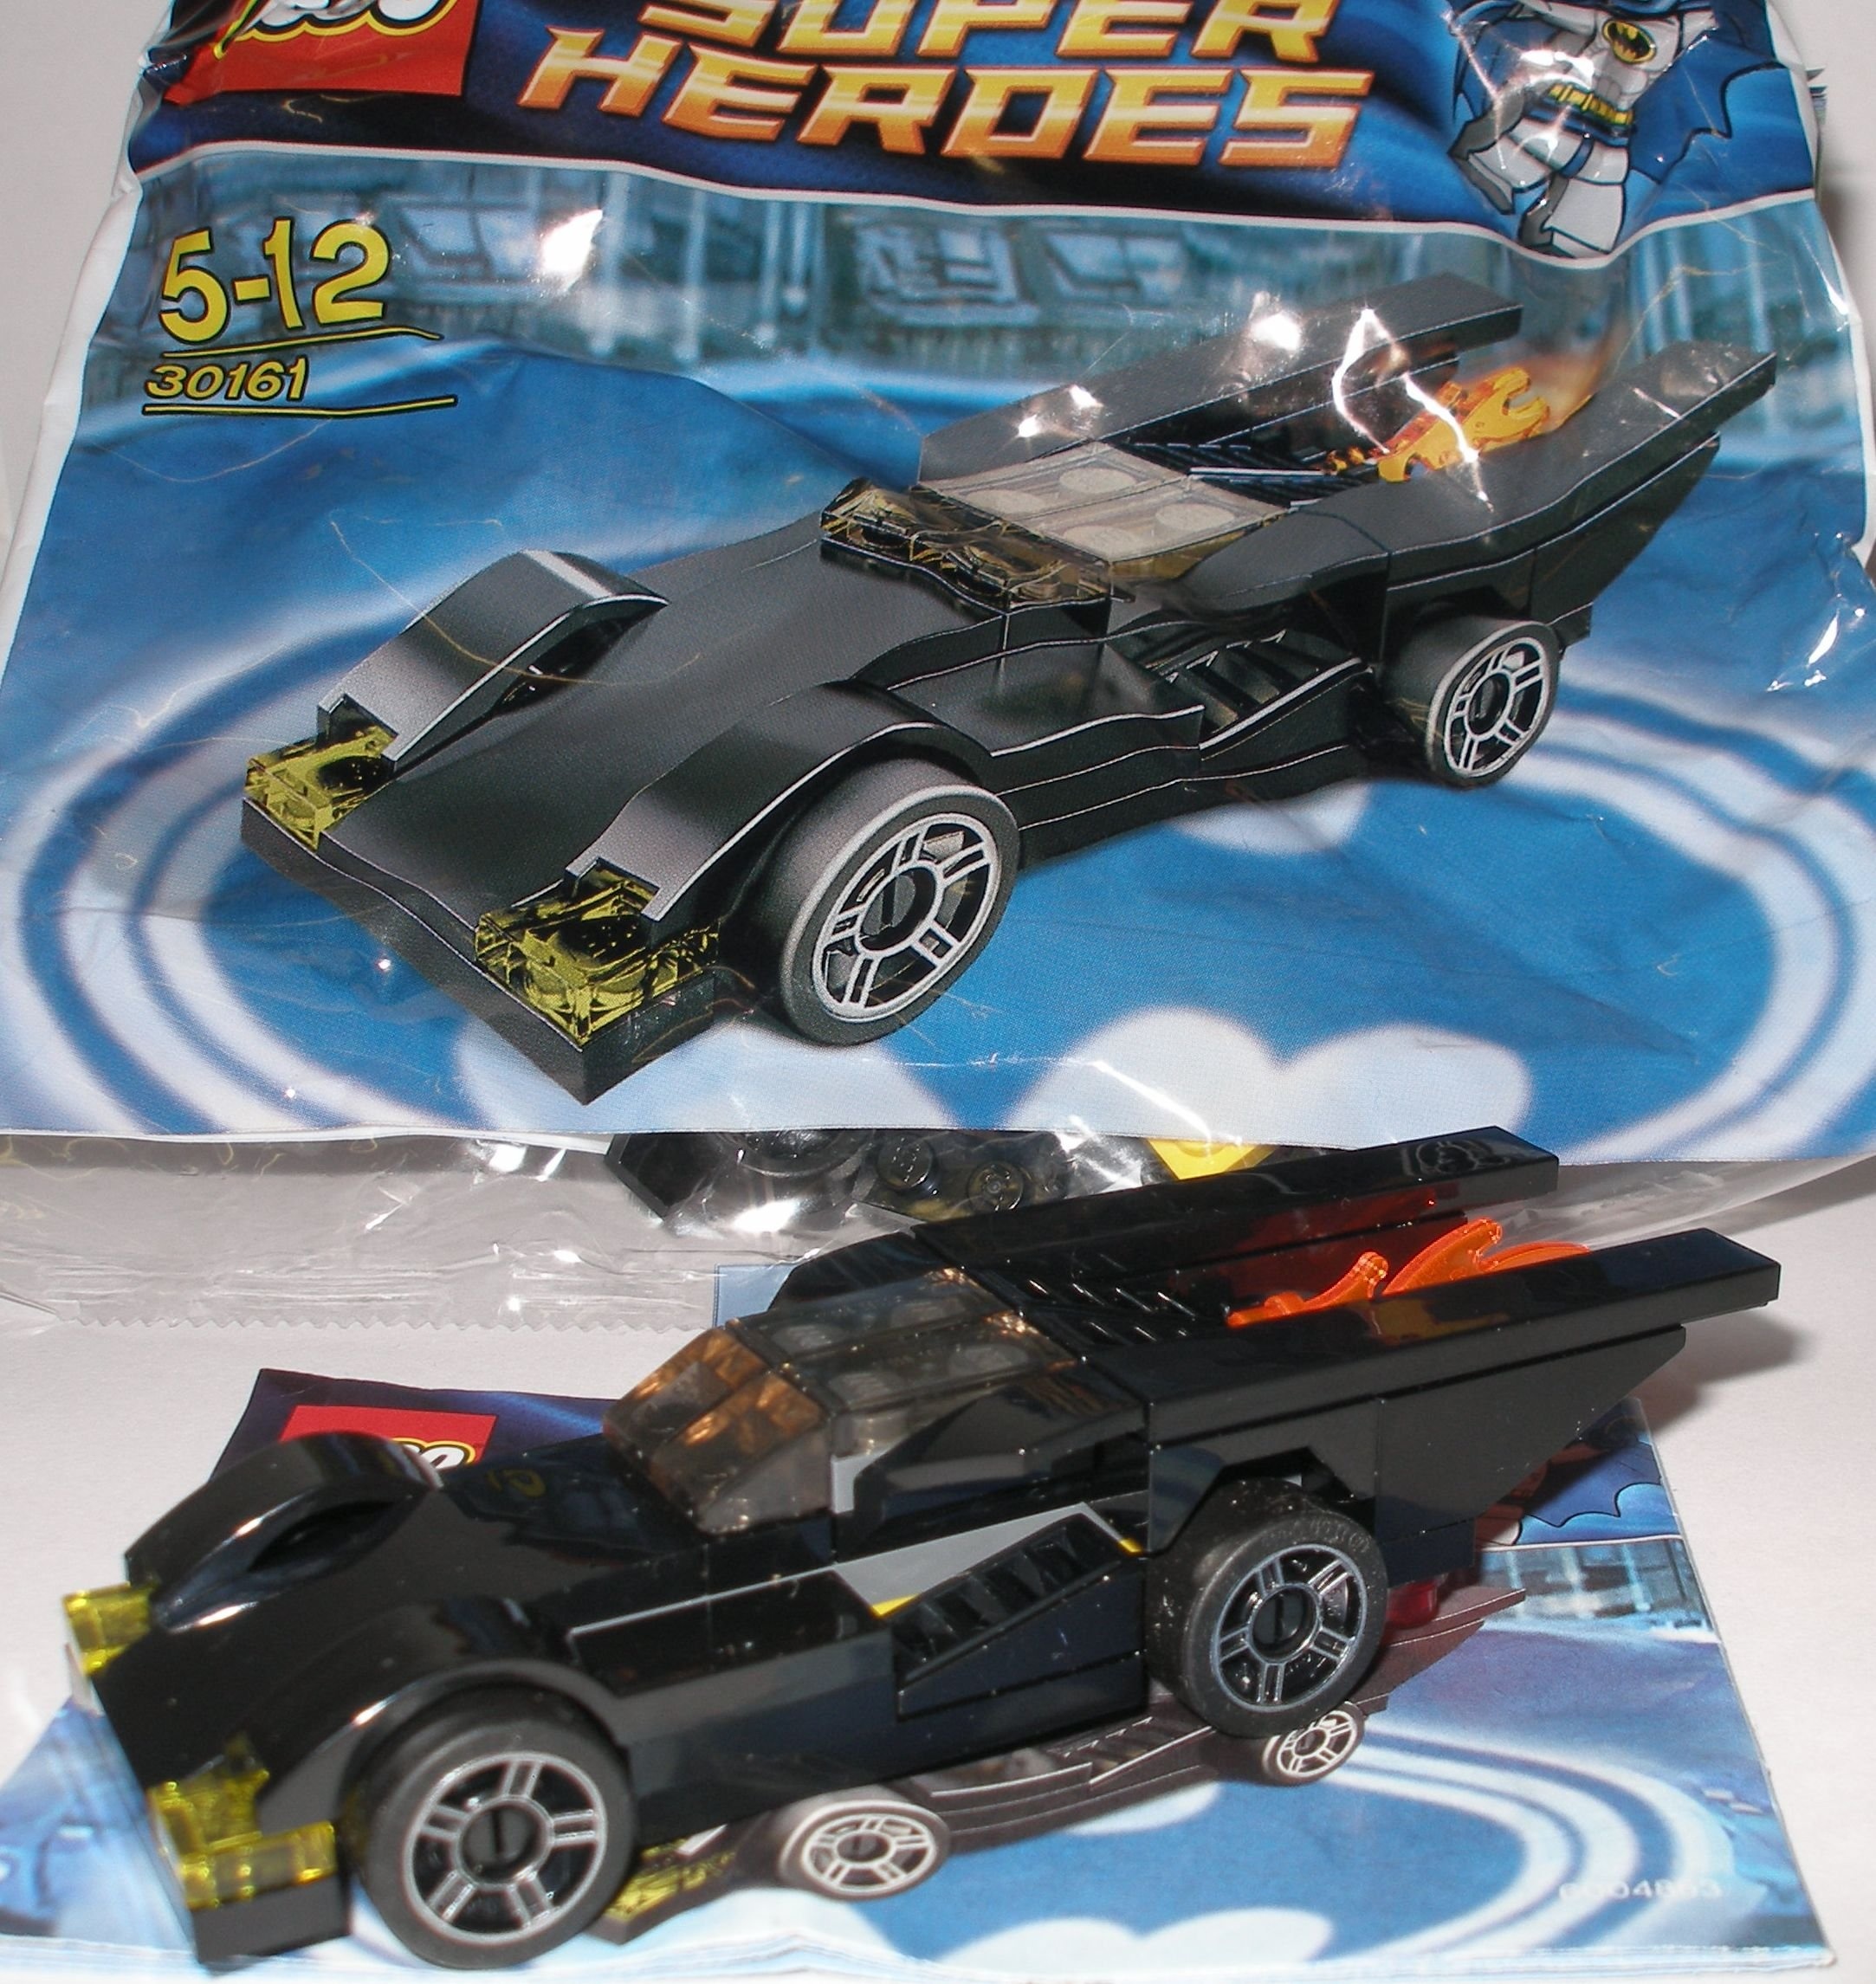 LEGO Super Heroes: Batmobile Setzen 30161 (Beutel) (Neu differenzbesteuert)